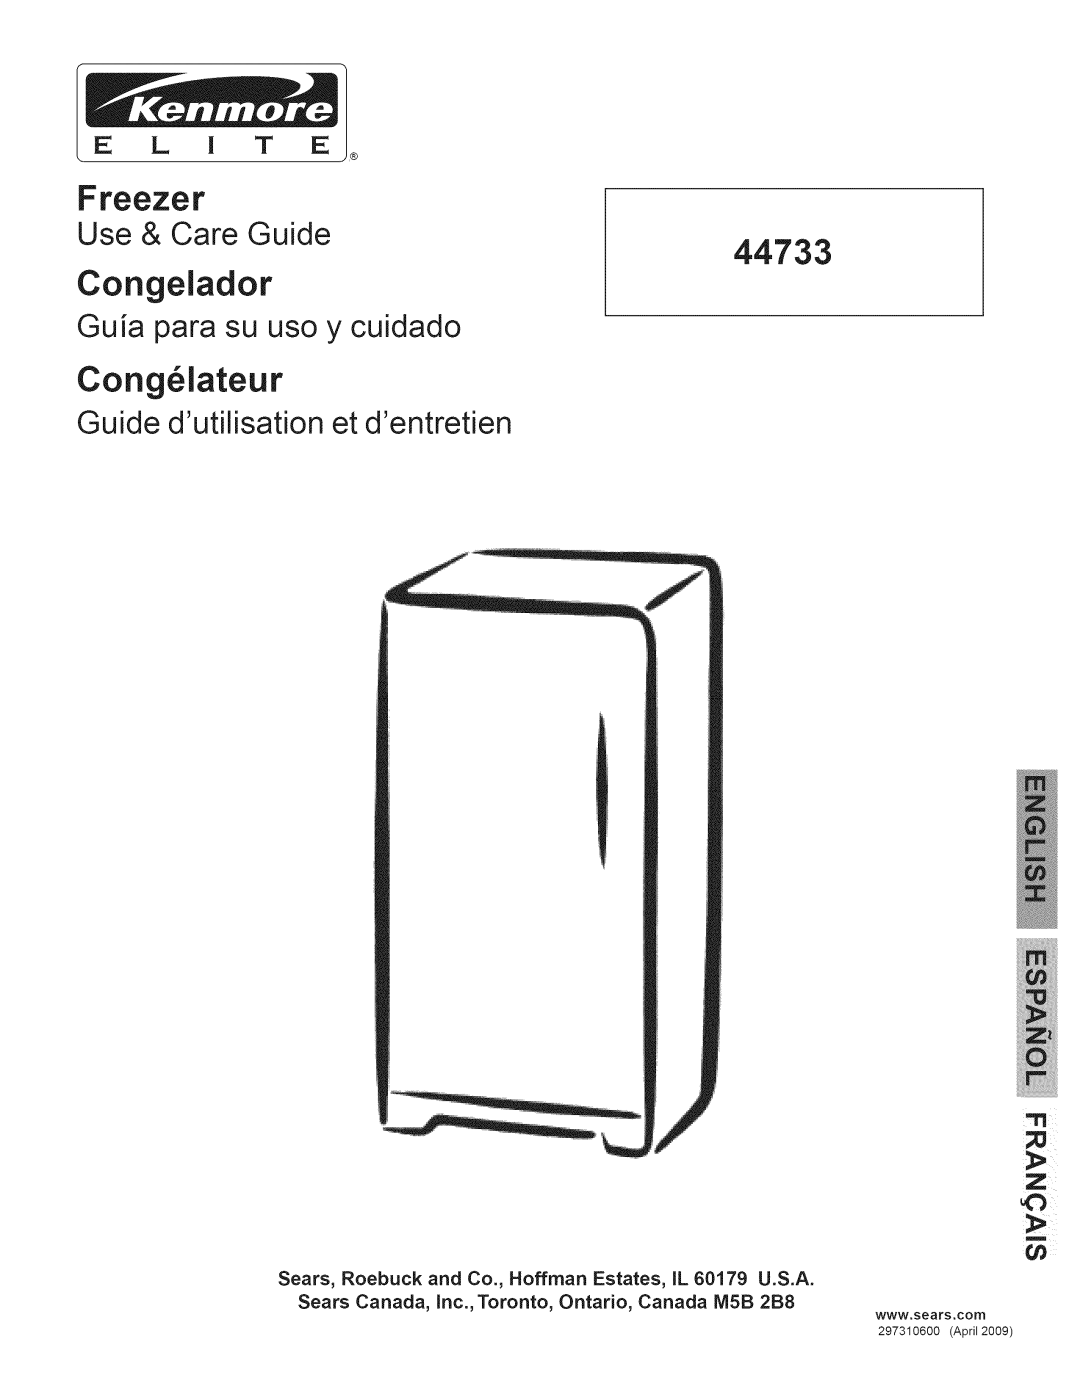 Kenmore 297310600 manual Congelador, Cong iateur, Freezer, 44733, Guia para su uso y cuidado, Use & Care Guide 